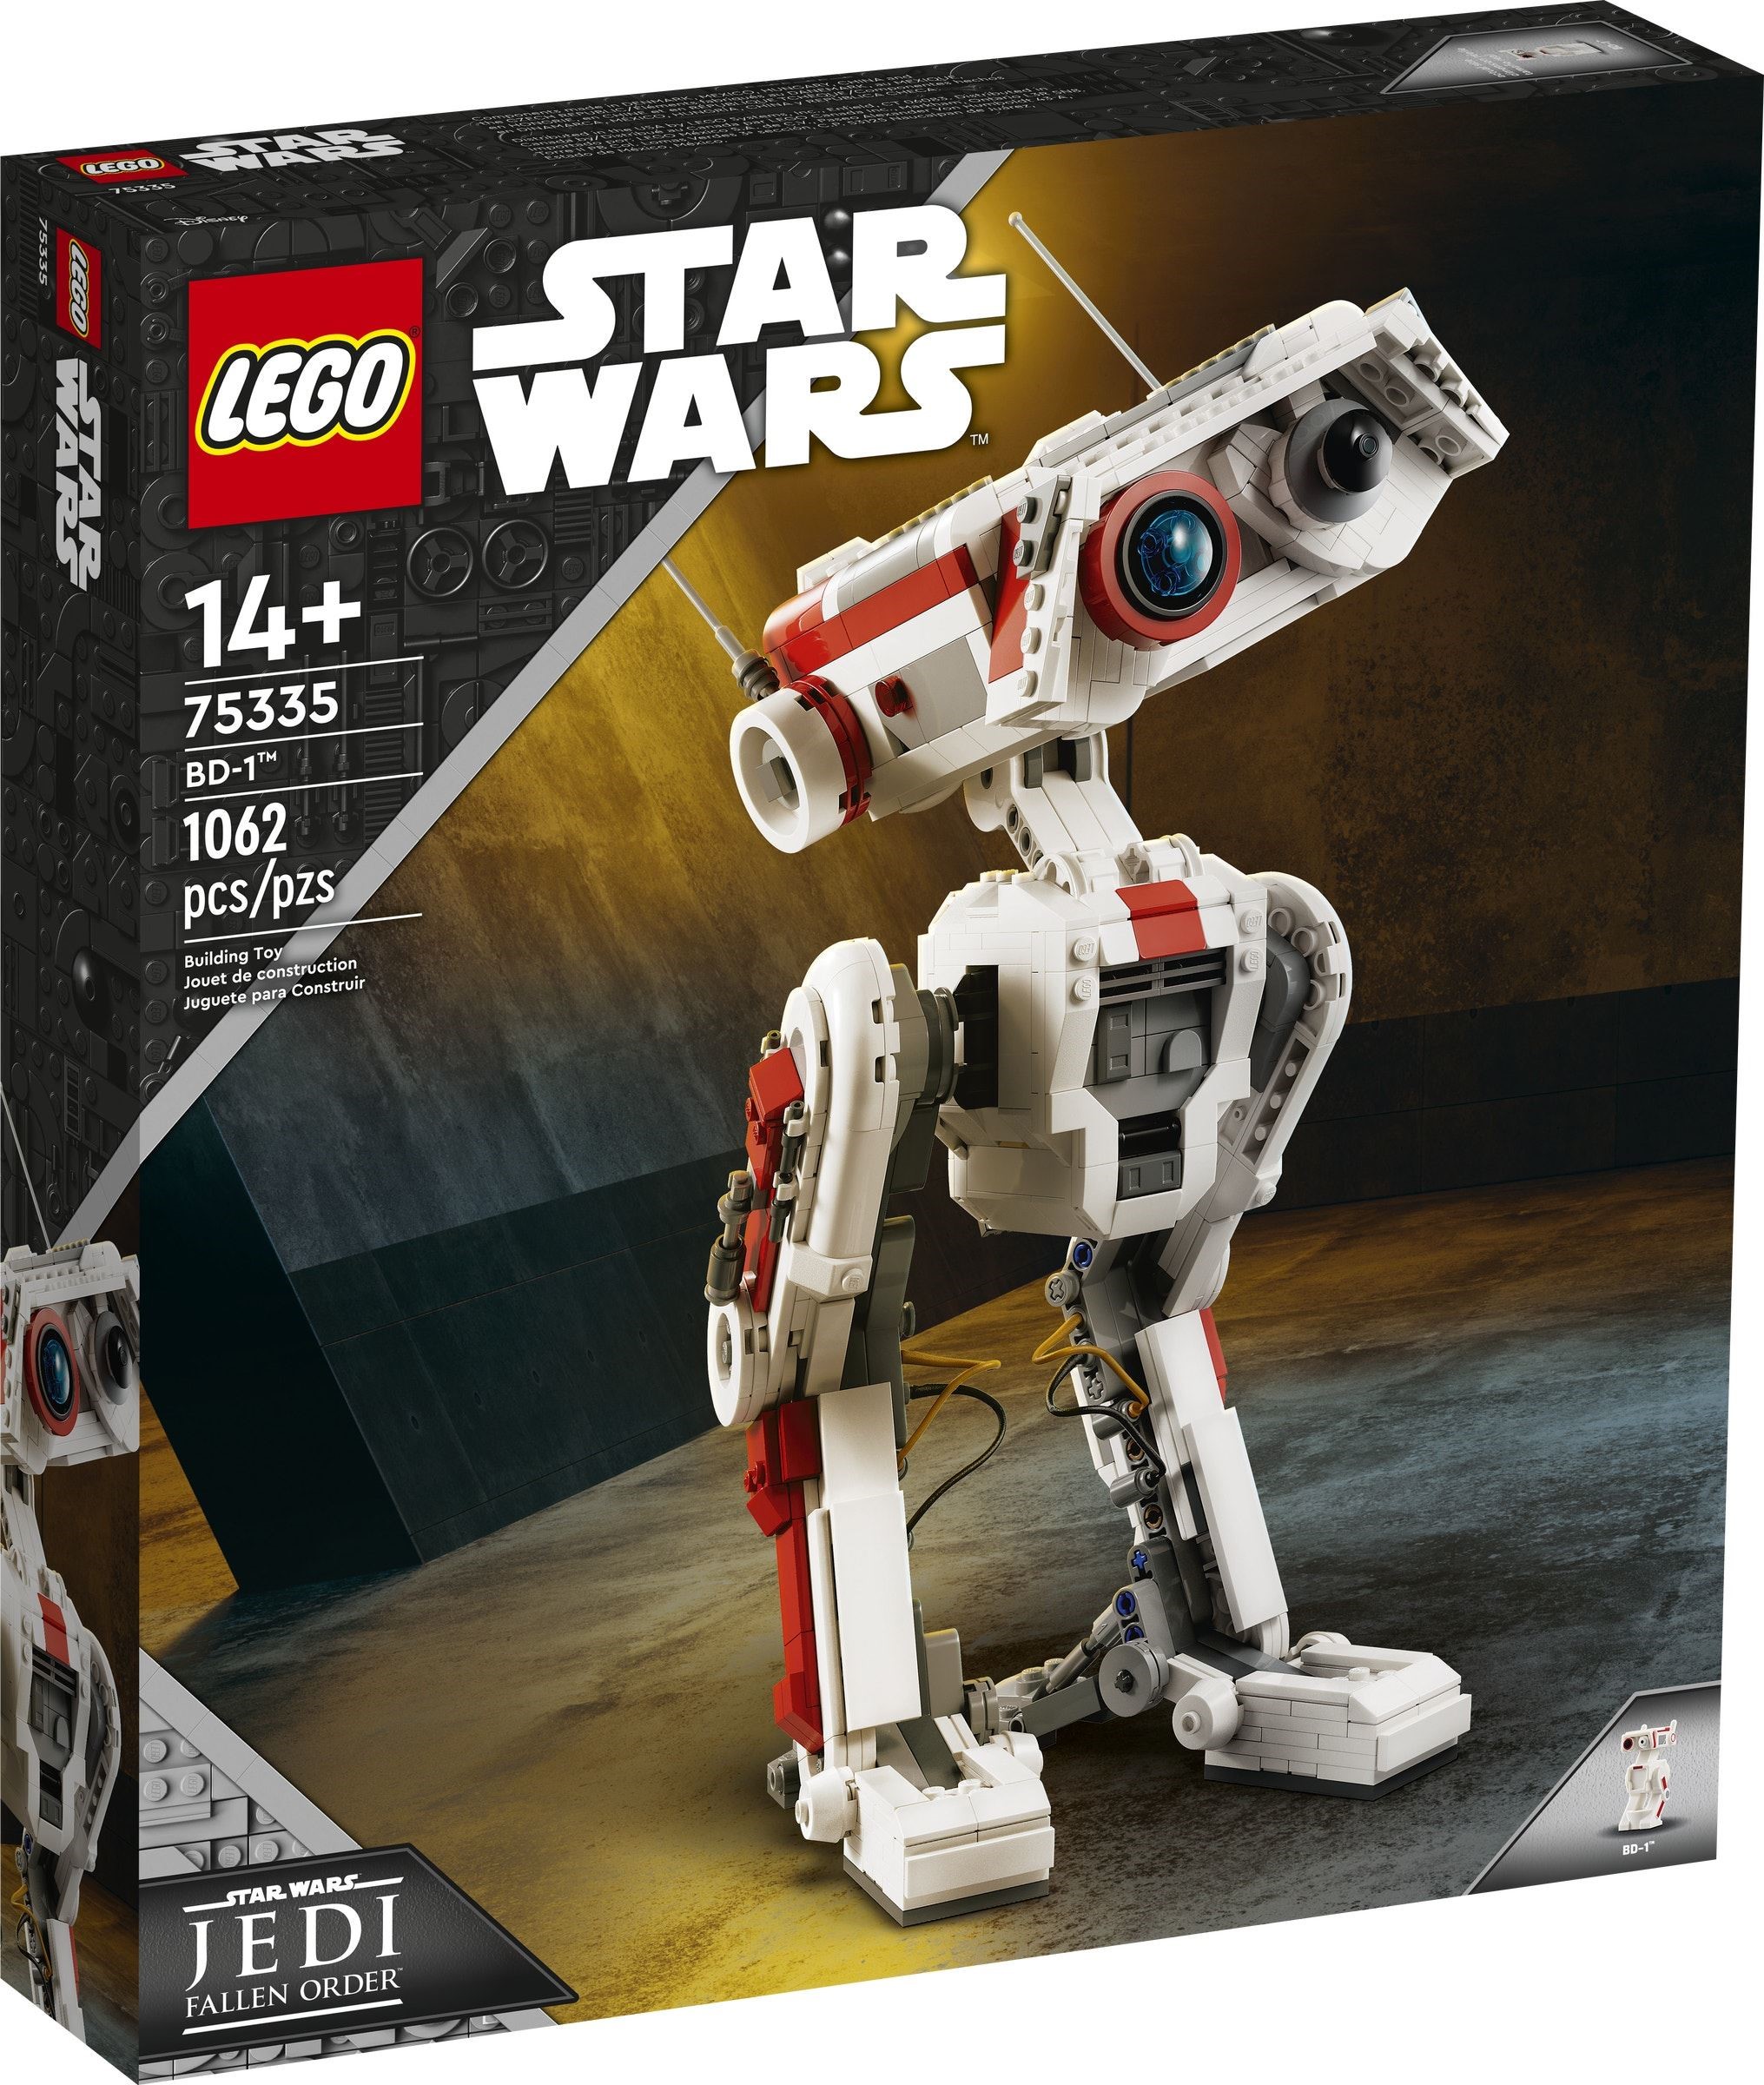 Samme Fugtig vaskepulver Two More LEGO Star Wars Sets Revealed at Star Wars Celebration 2022 - The  Brick Fan